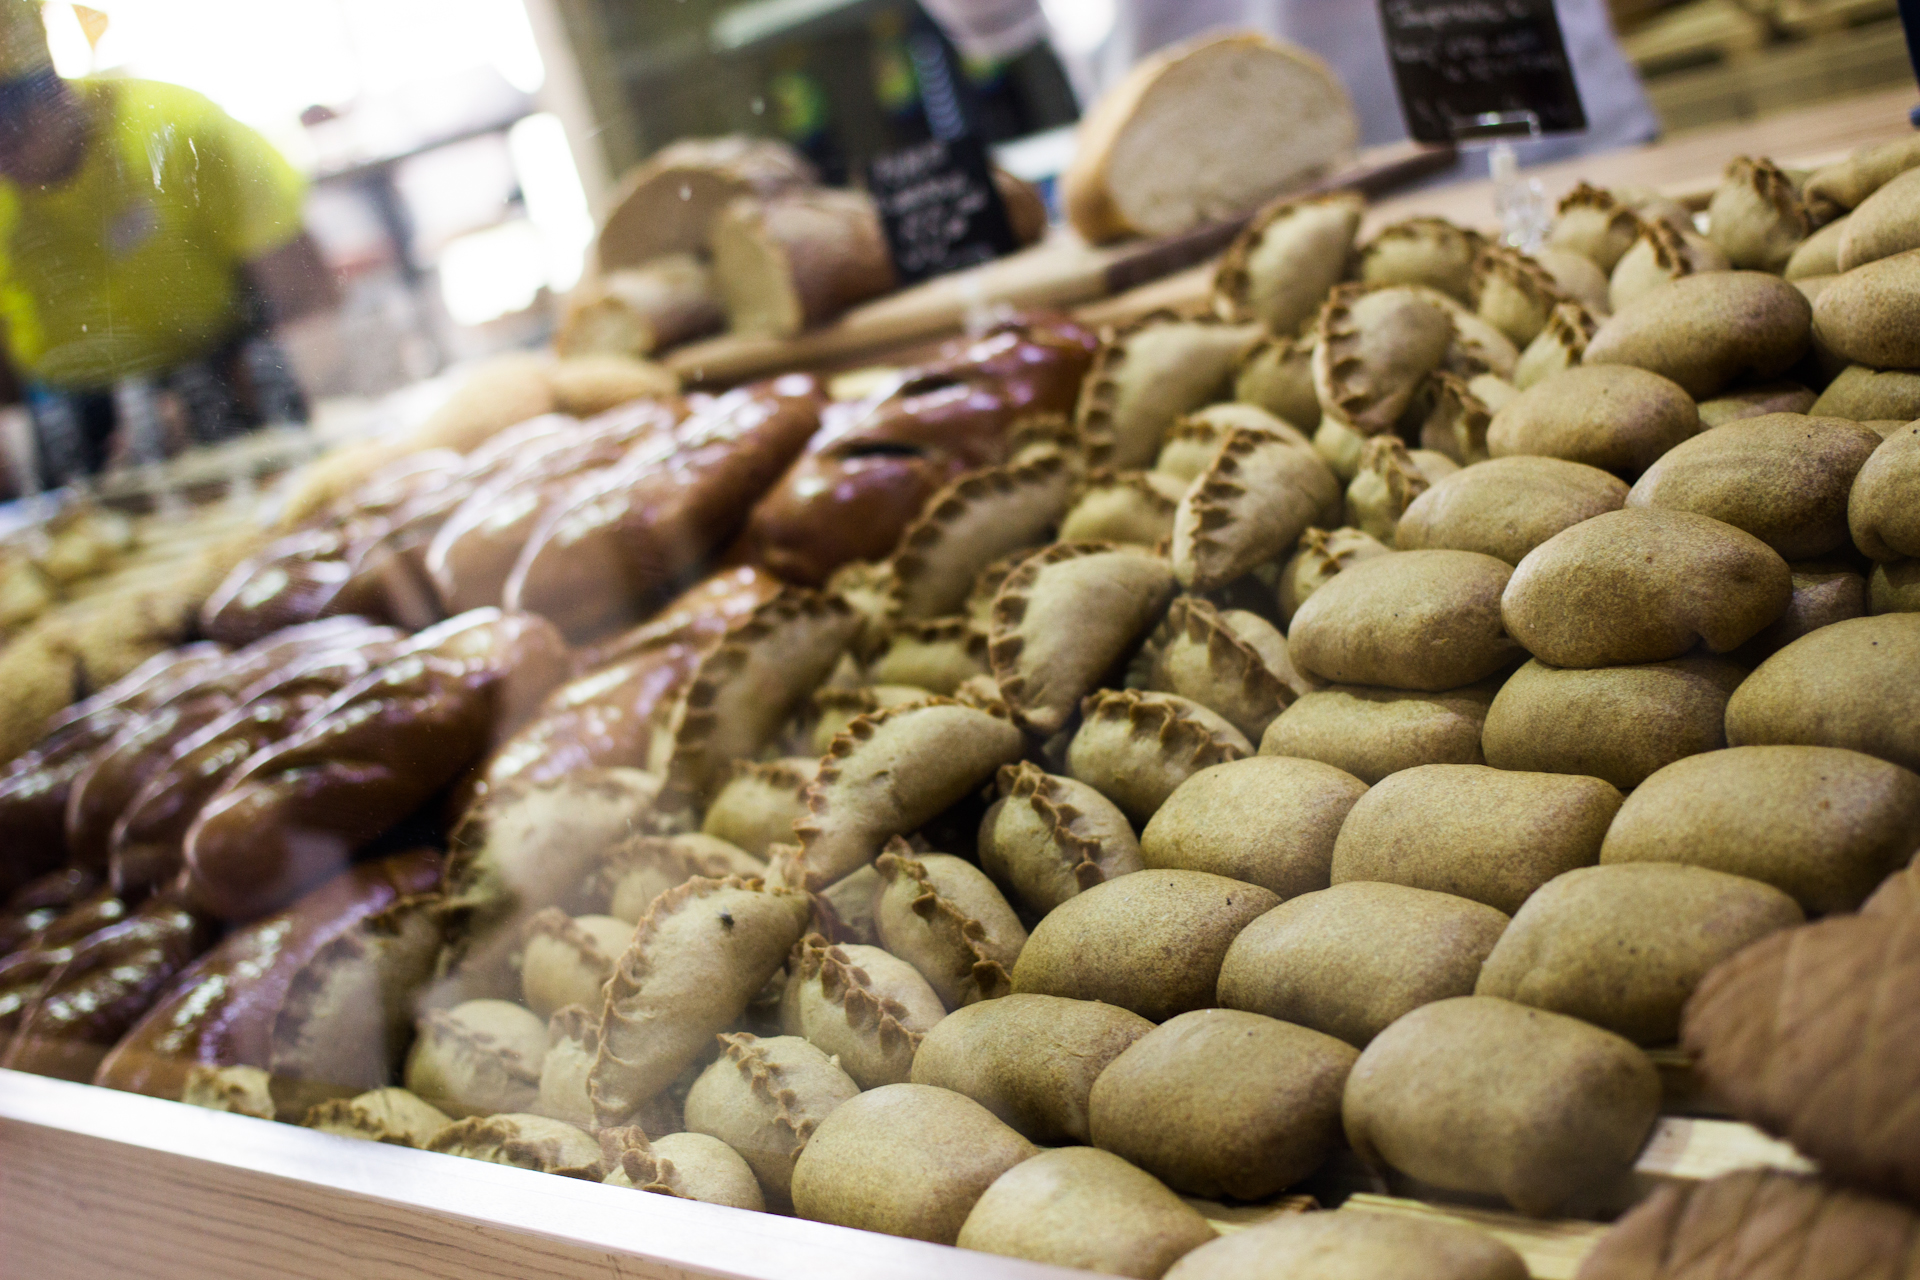 «Кафе-Кондитерская» в супермаркете «Читинка» - возможность отведать настоящий ремесленный хлеб